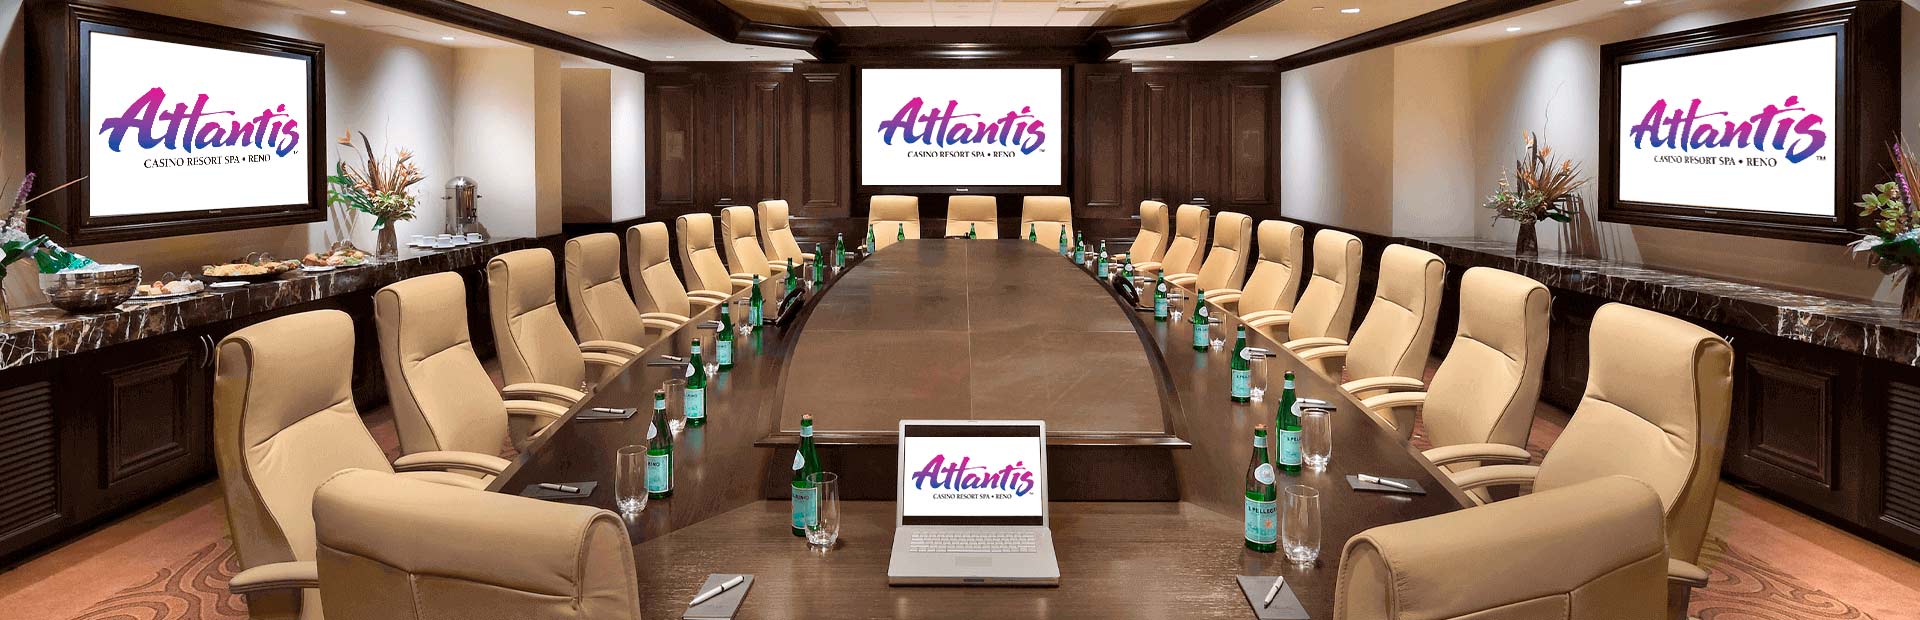 Executive Boardroom at Atlantis